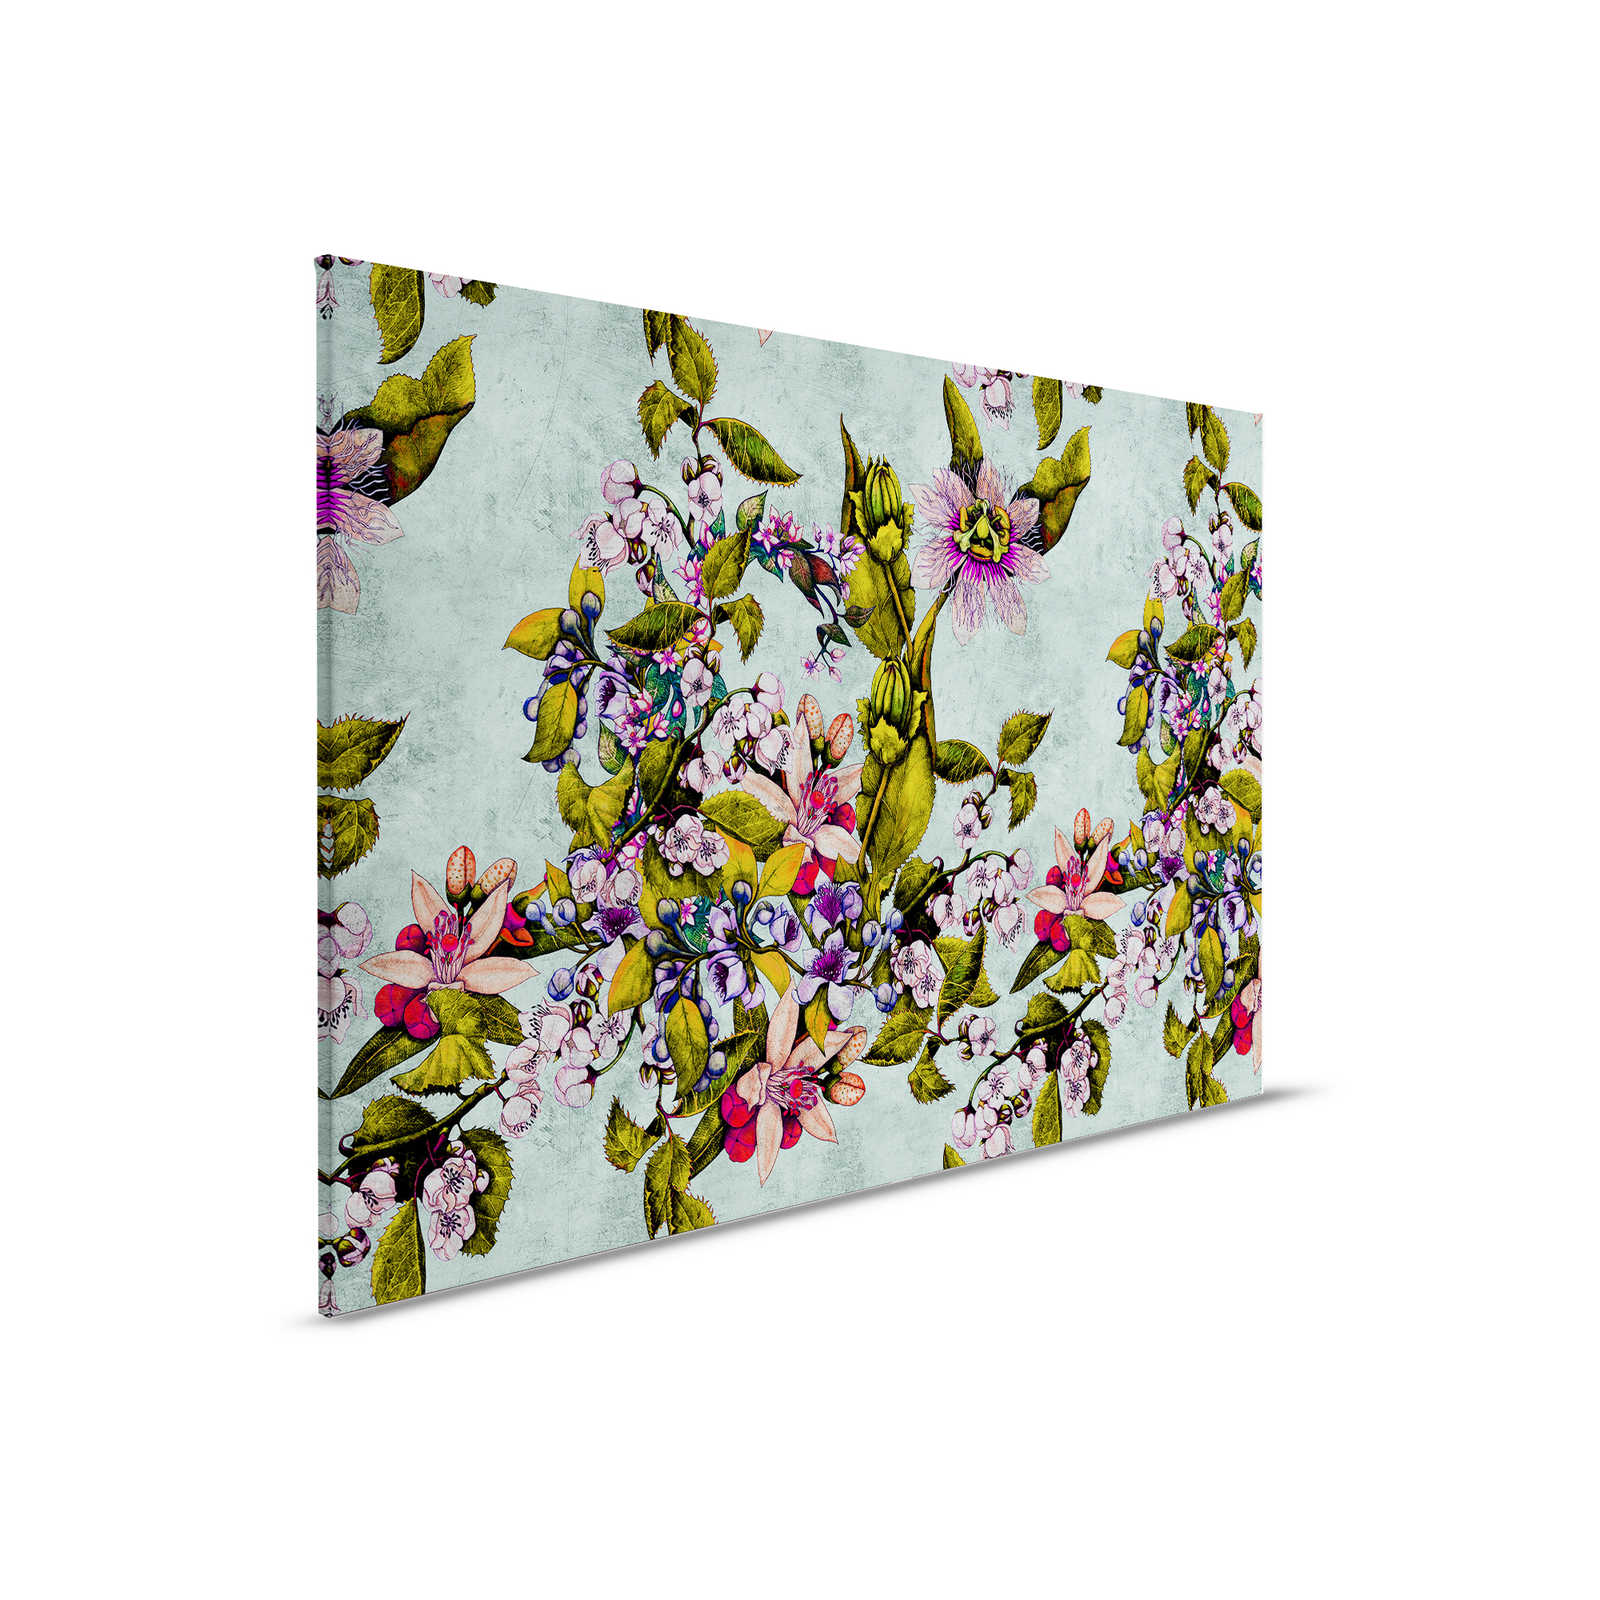 Tropical Passion 2 - Leinwandbild mit Blüten und Knospen – 0,90 m x 0,60 m
